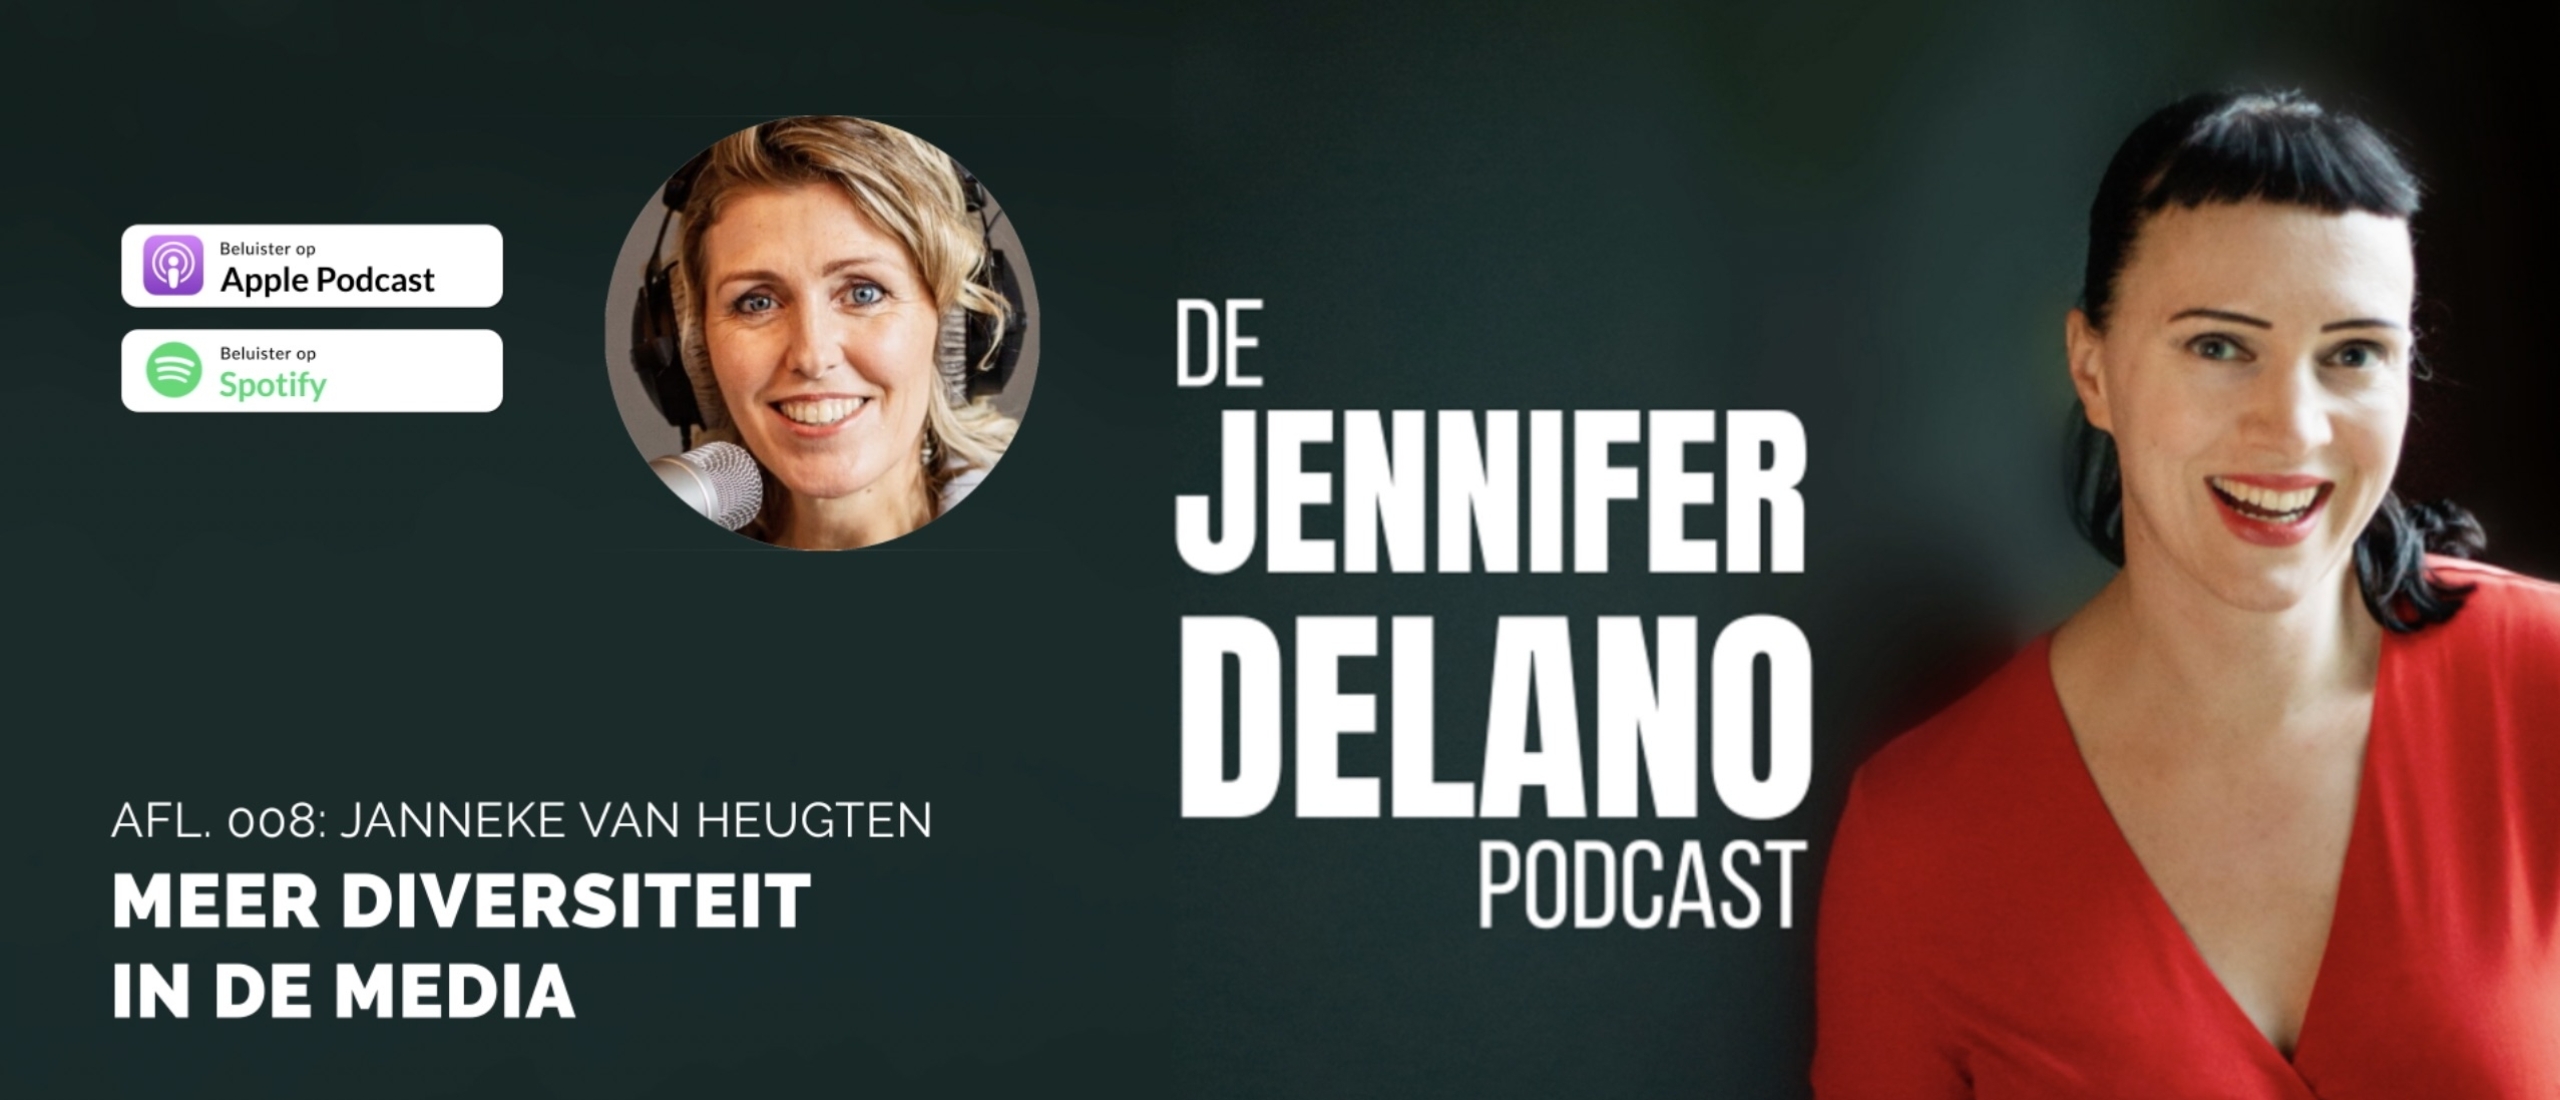 Meer diversiteit in de media - De Jennifer Delano Podcast Afl. 008 met Janneke van Heugten